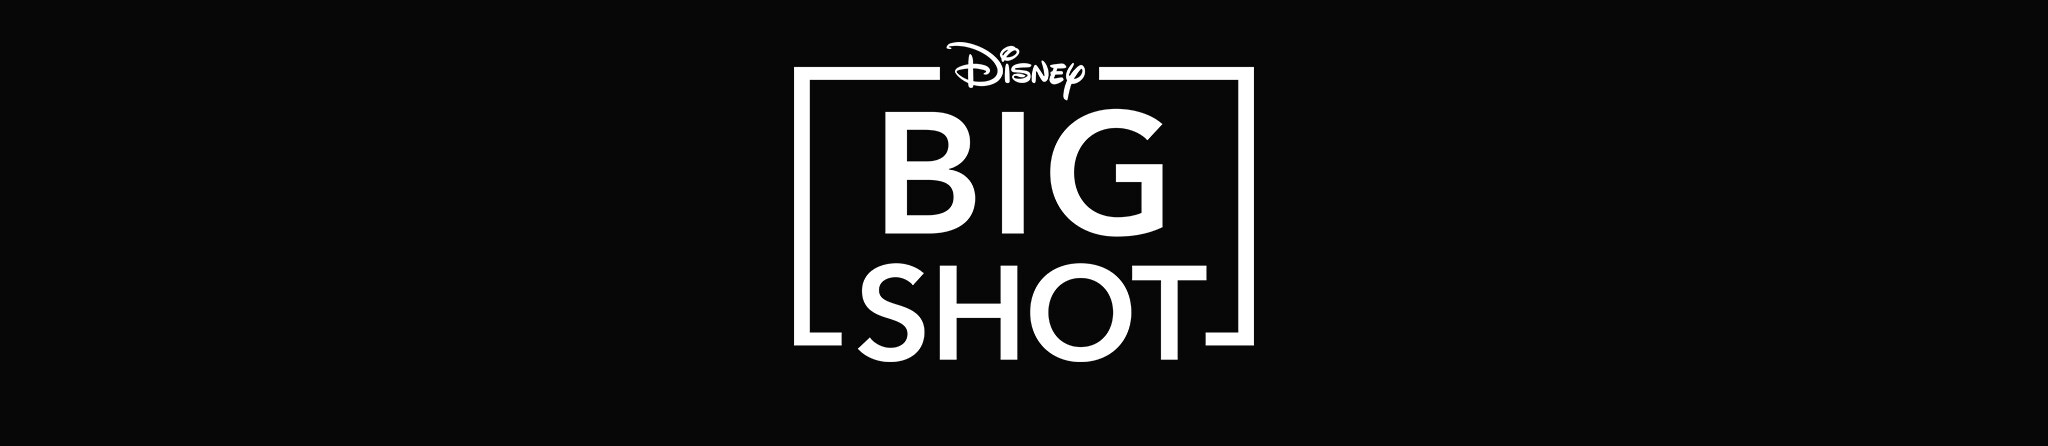 Big Shot | Estreno 16 de abril | Solo en Disney+